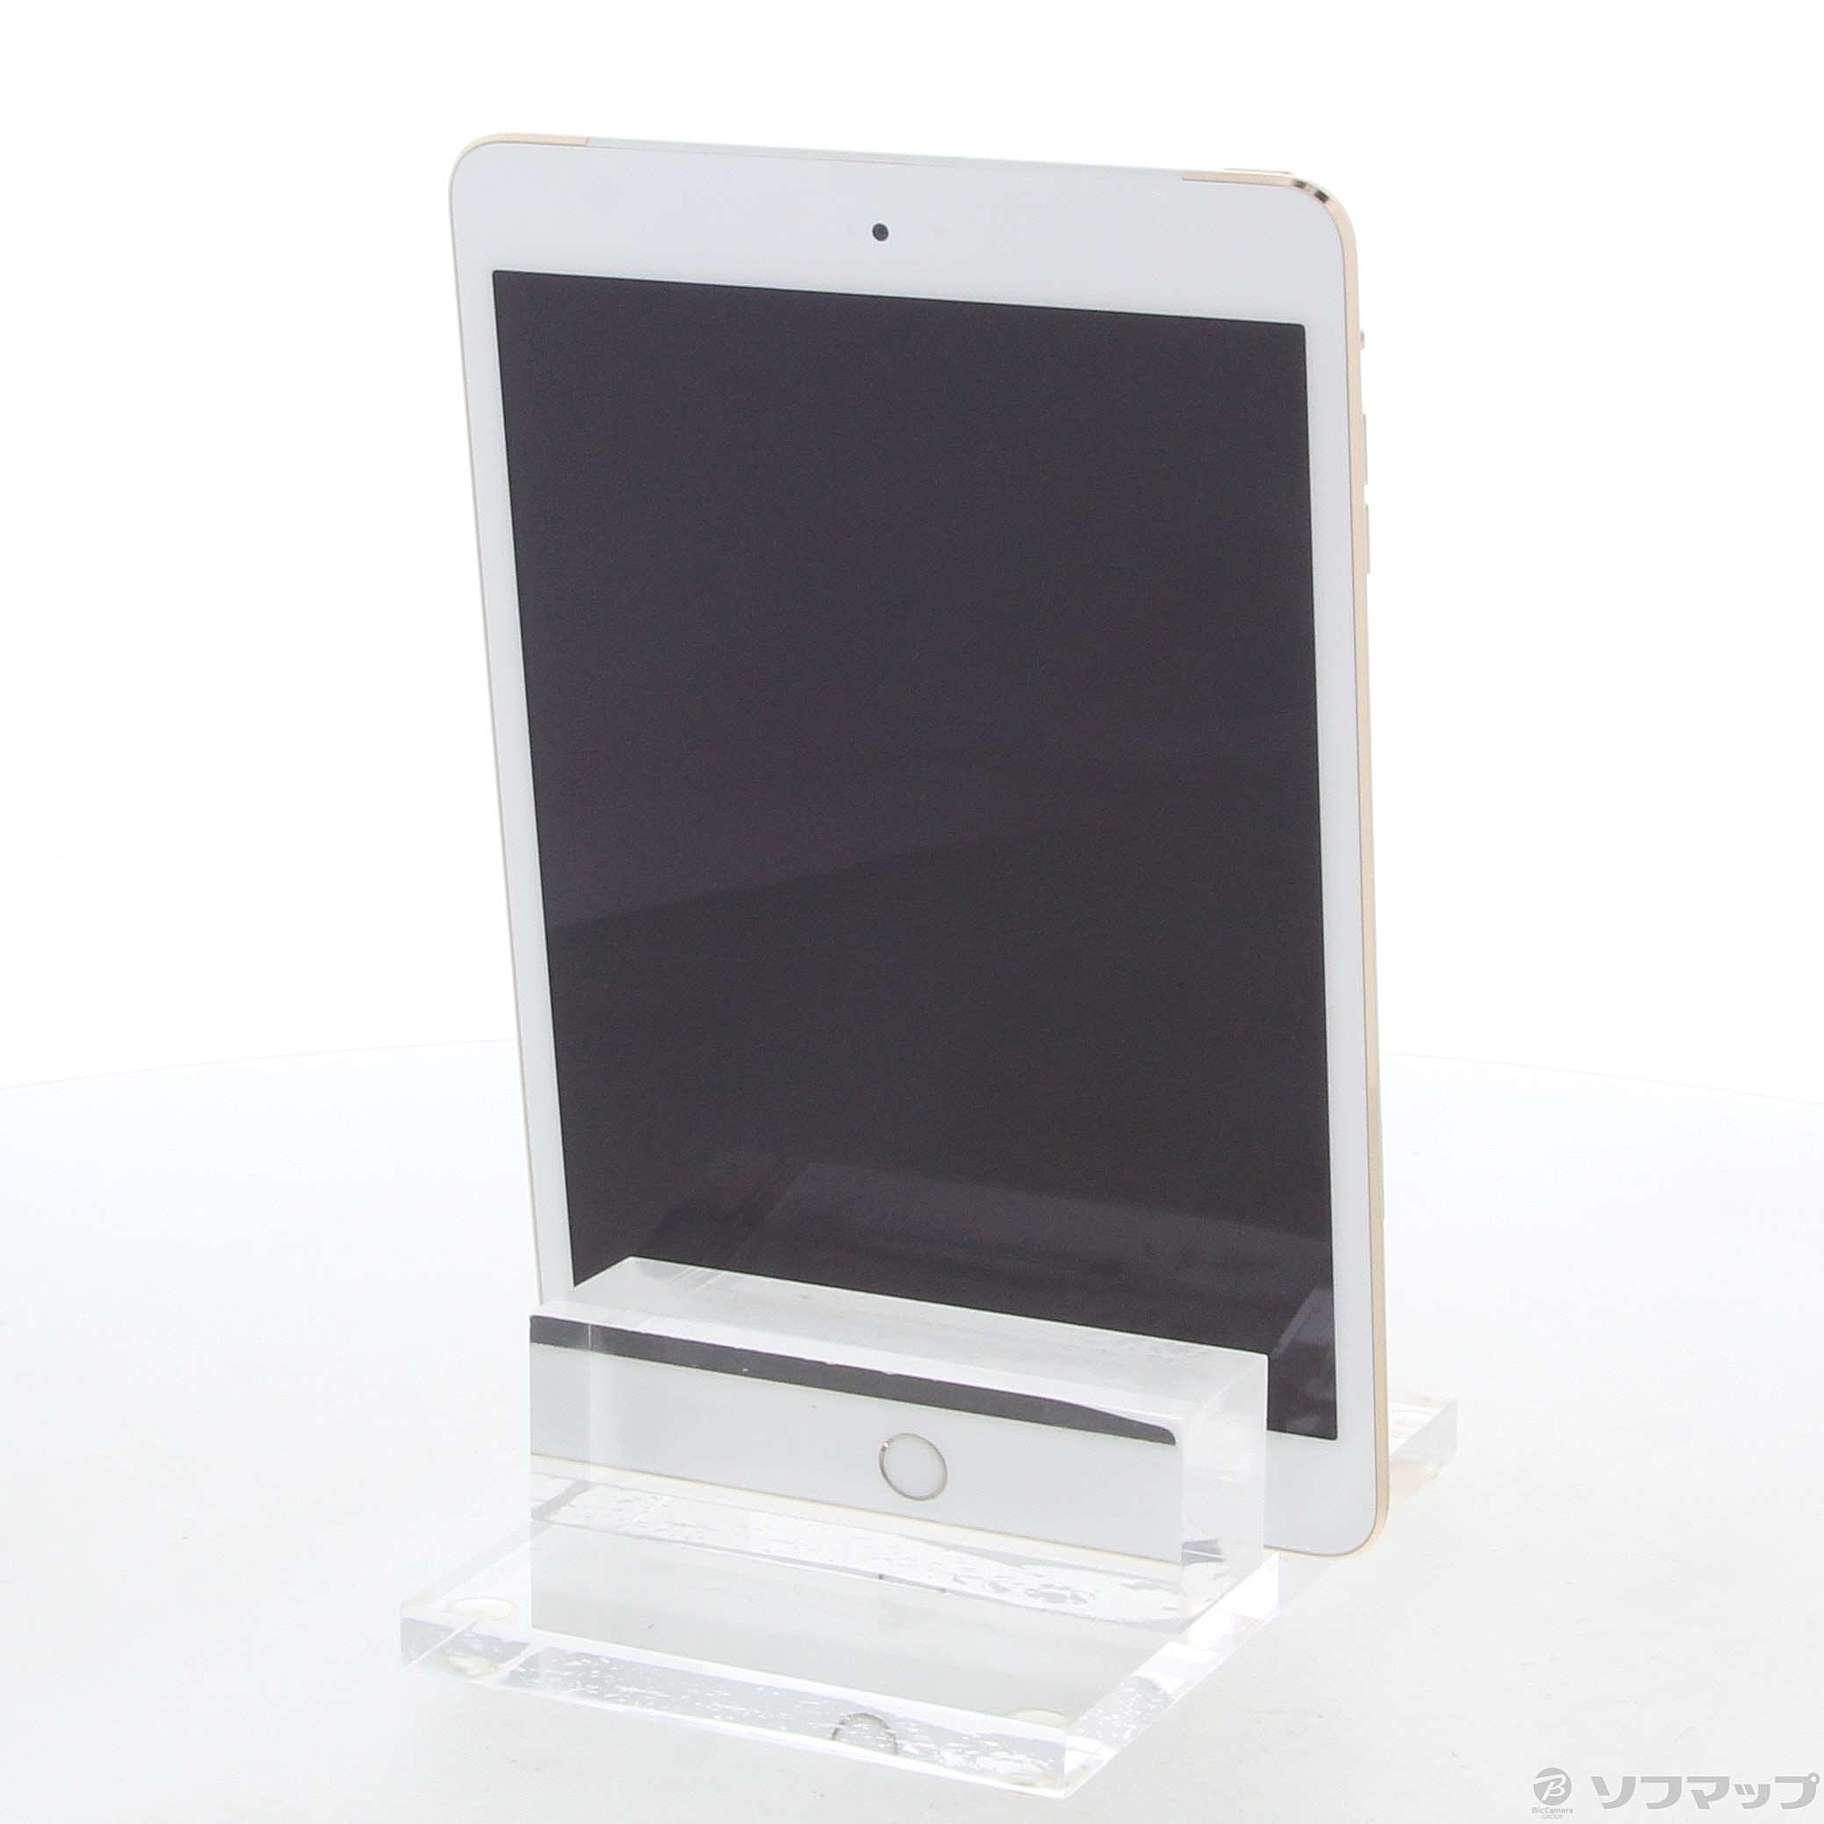 美品iPadmini3 16GB★MGYR2J/AA1600 SoftBank841カラー